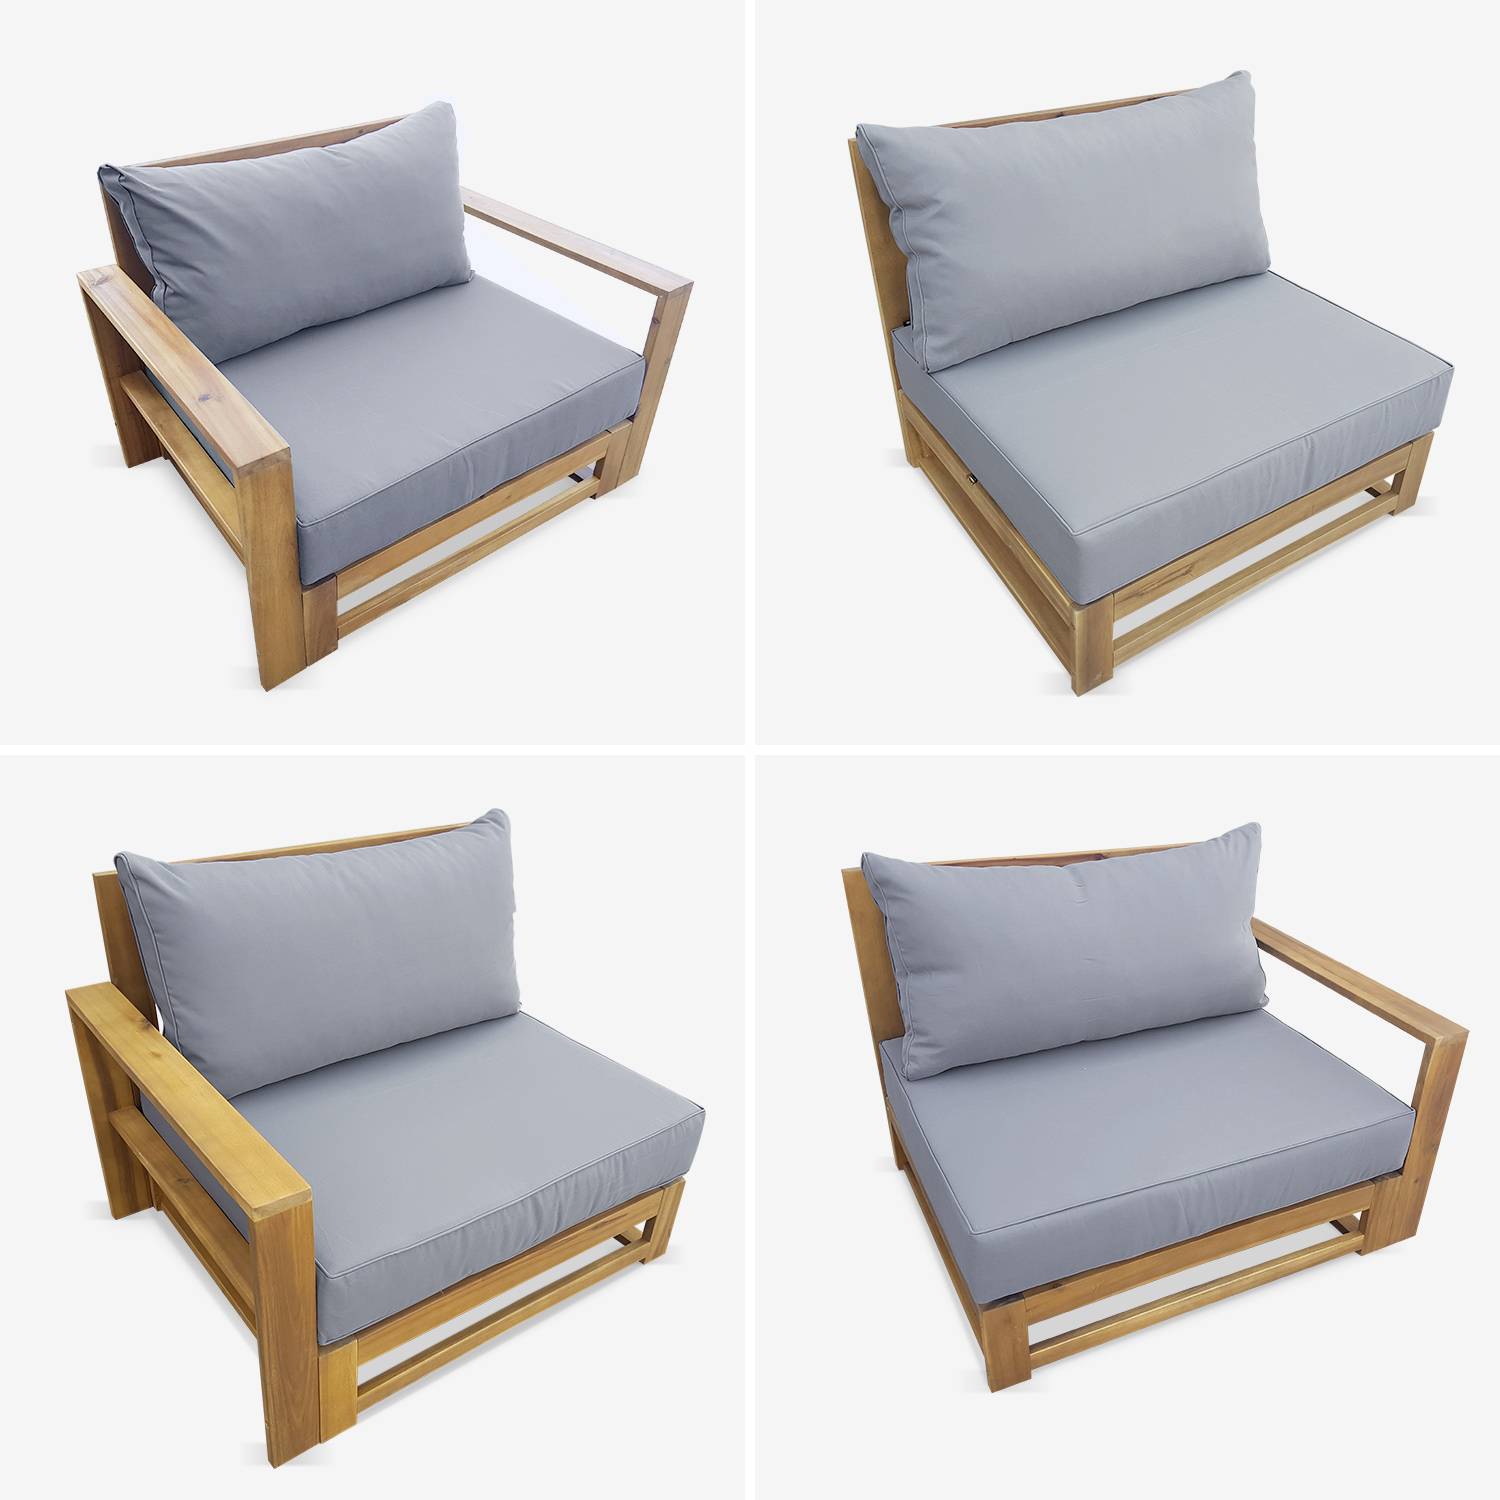 Salon de jardin en bois 5 places - Mendoza - Coussins gris, canapé, fauteuils et table basse en acacia, 6 éléments modulables, design Photo5